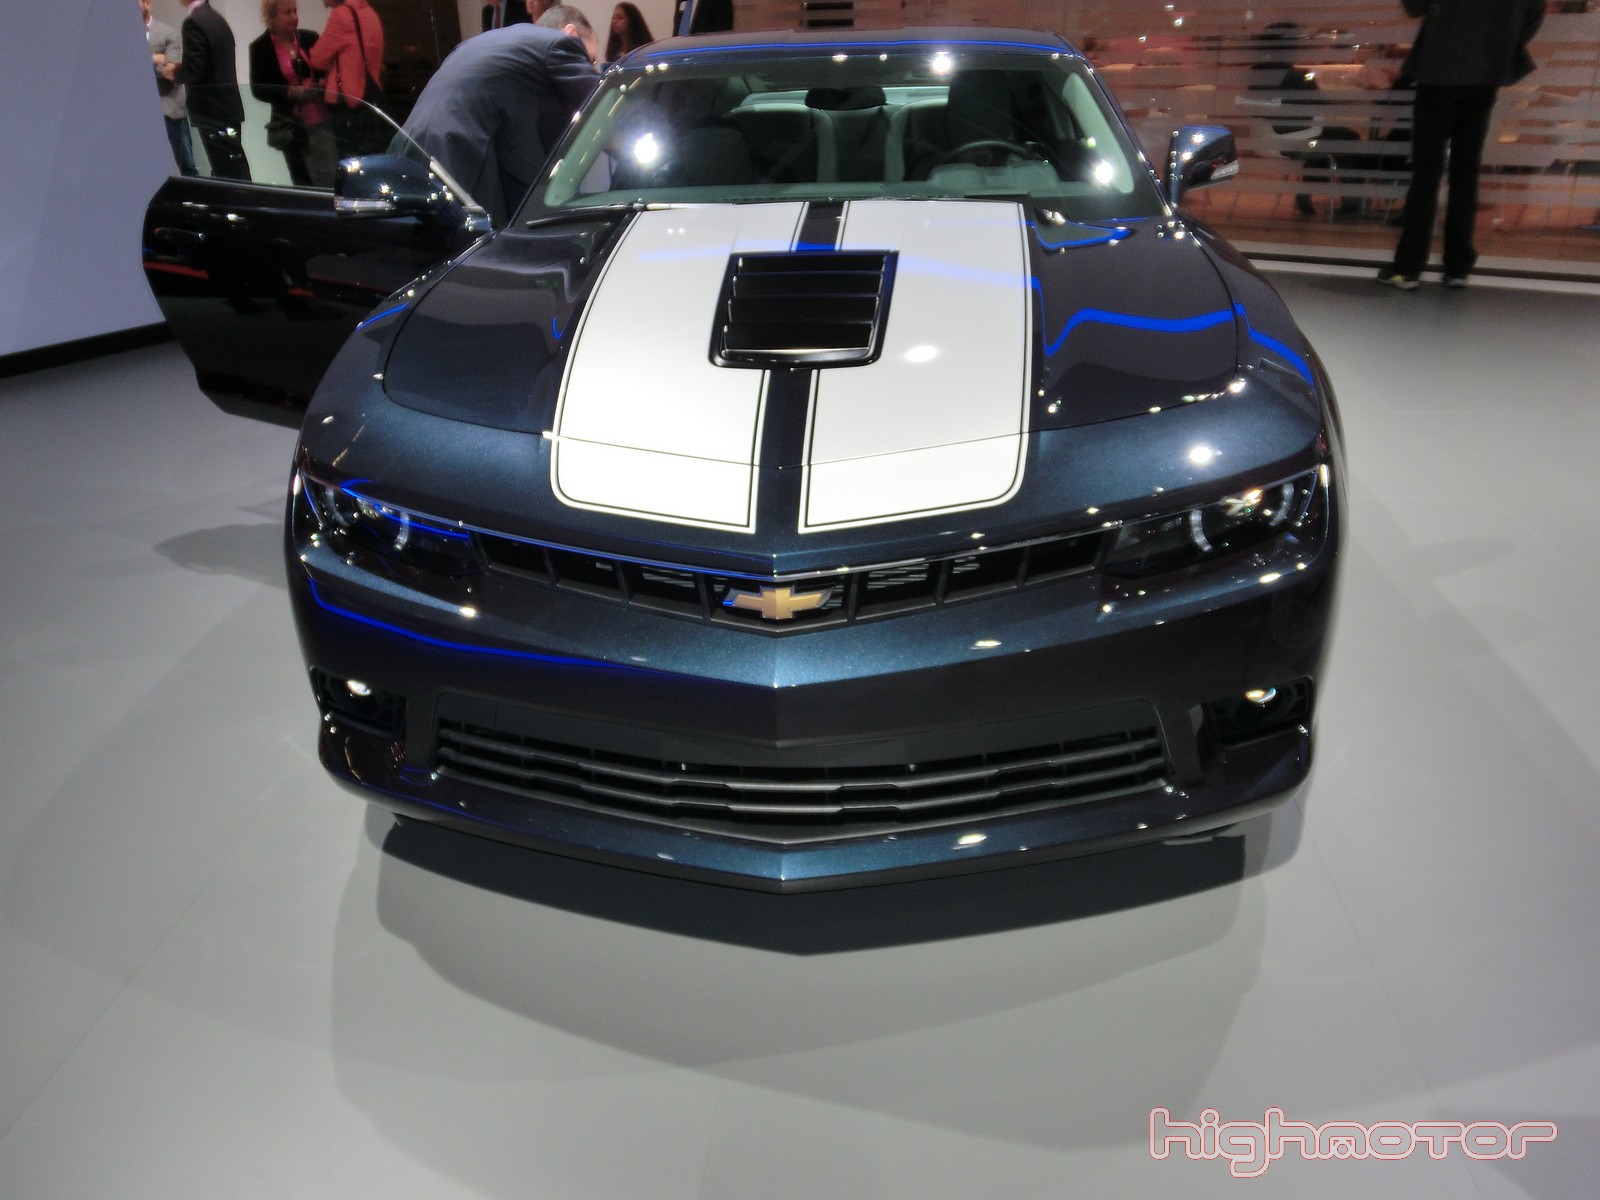 Chevrolet en el Salón de Frankfurt 2013